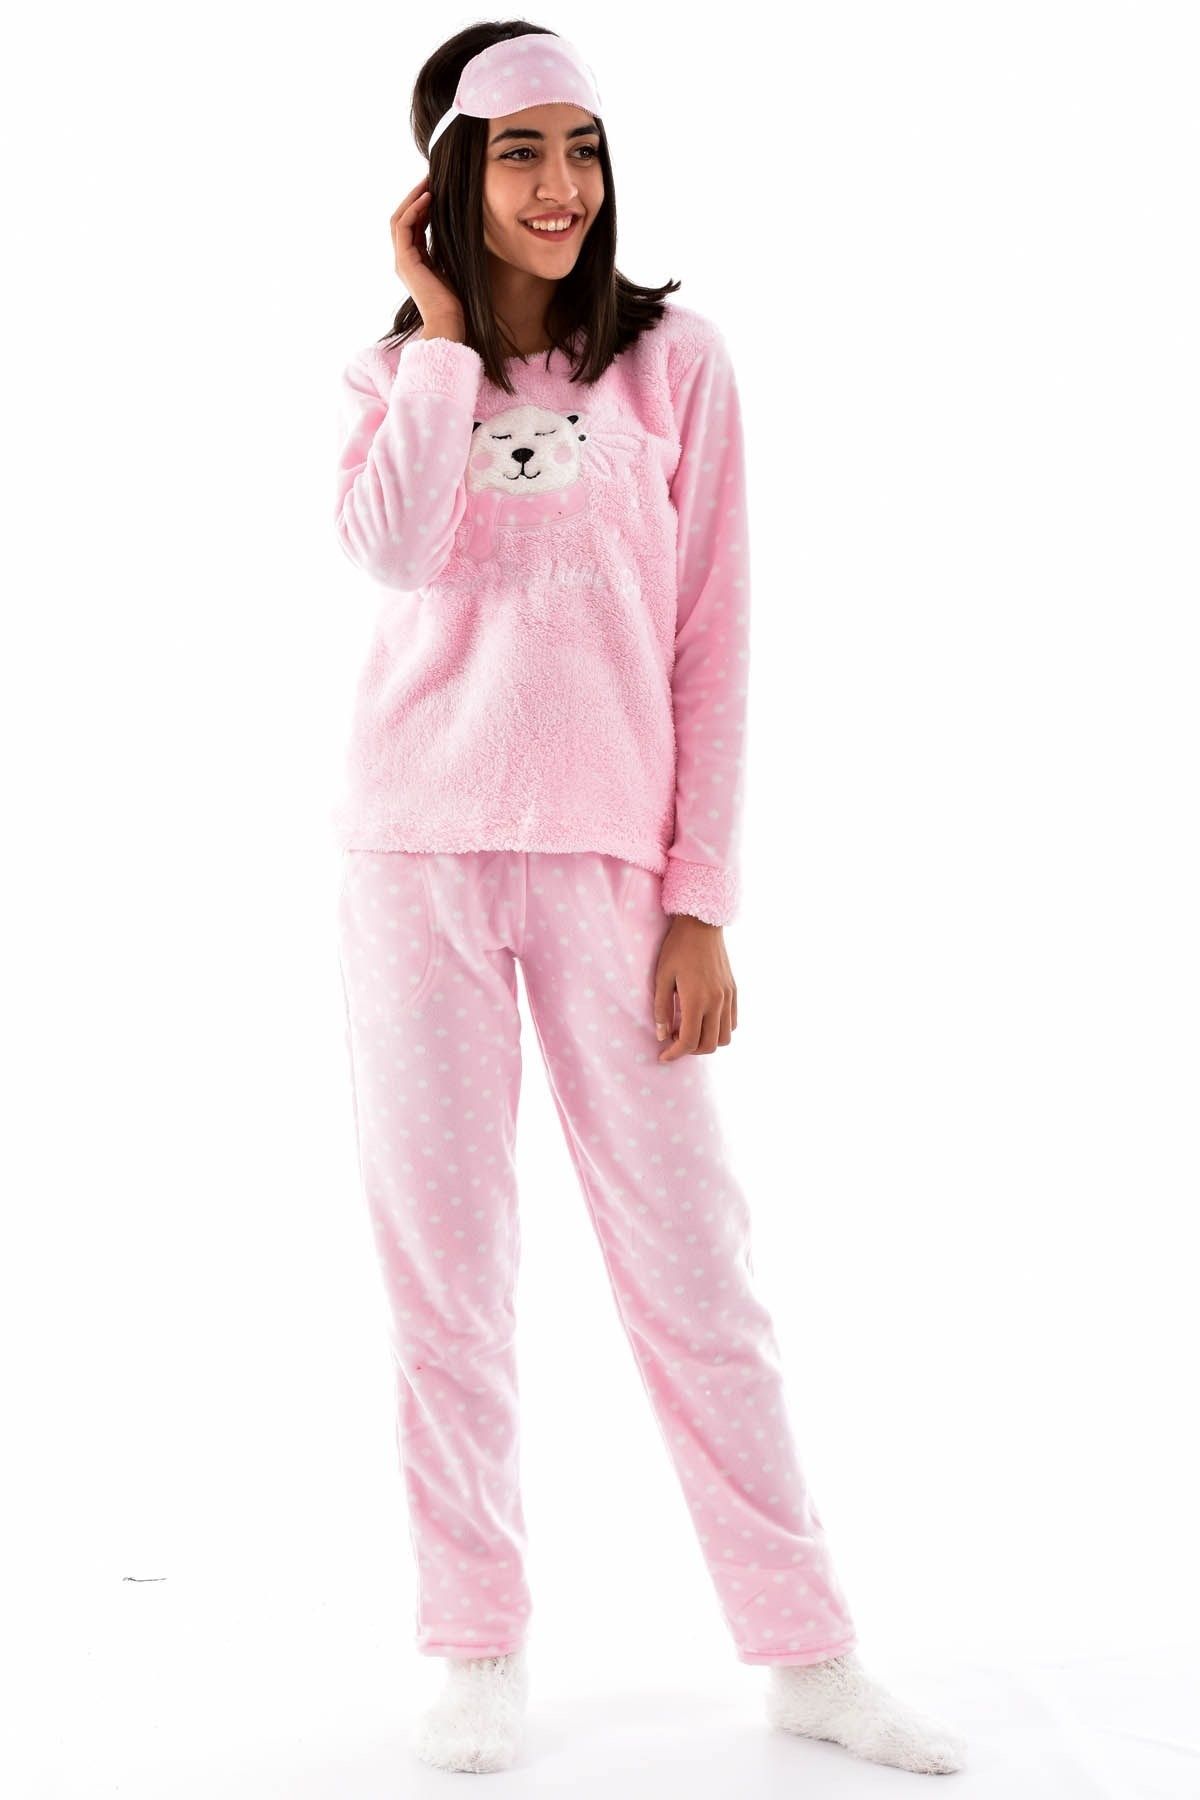 ARCAN Kadın 1117-2 Çoraplı Göz Bantlı Welsoft Polar Pijama Takımı Pembe